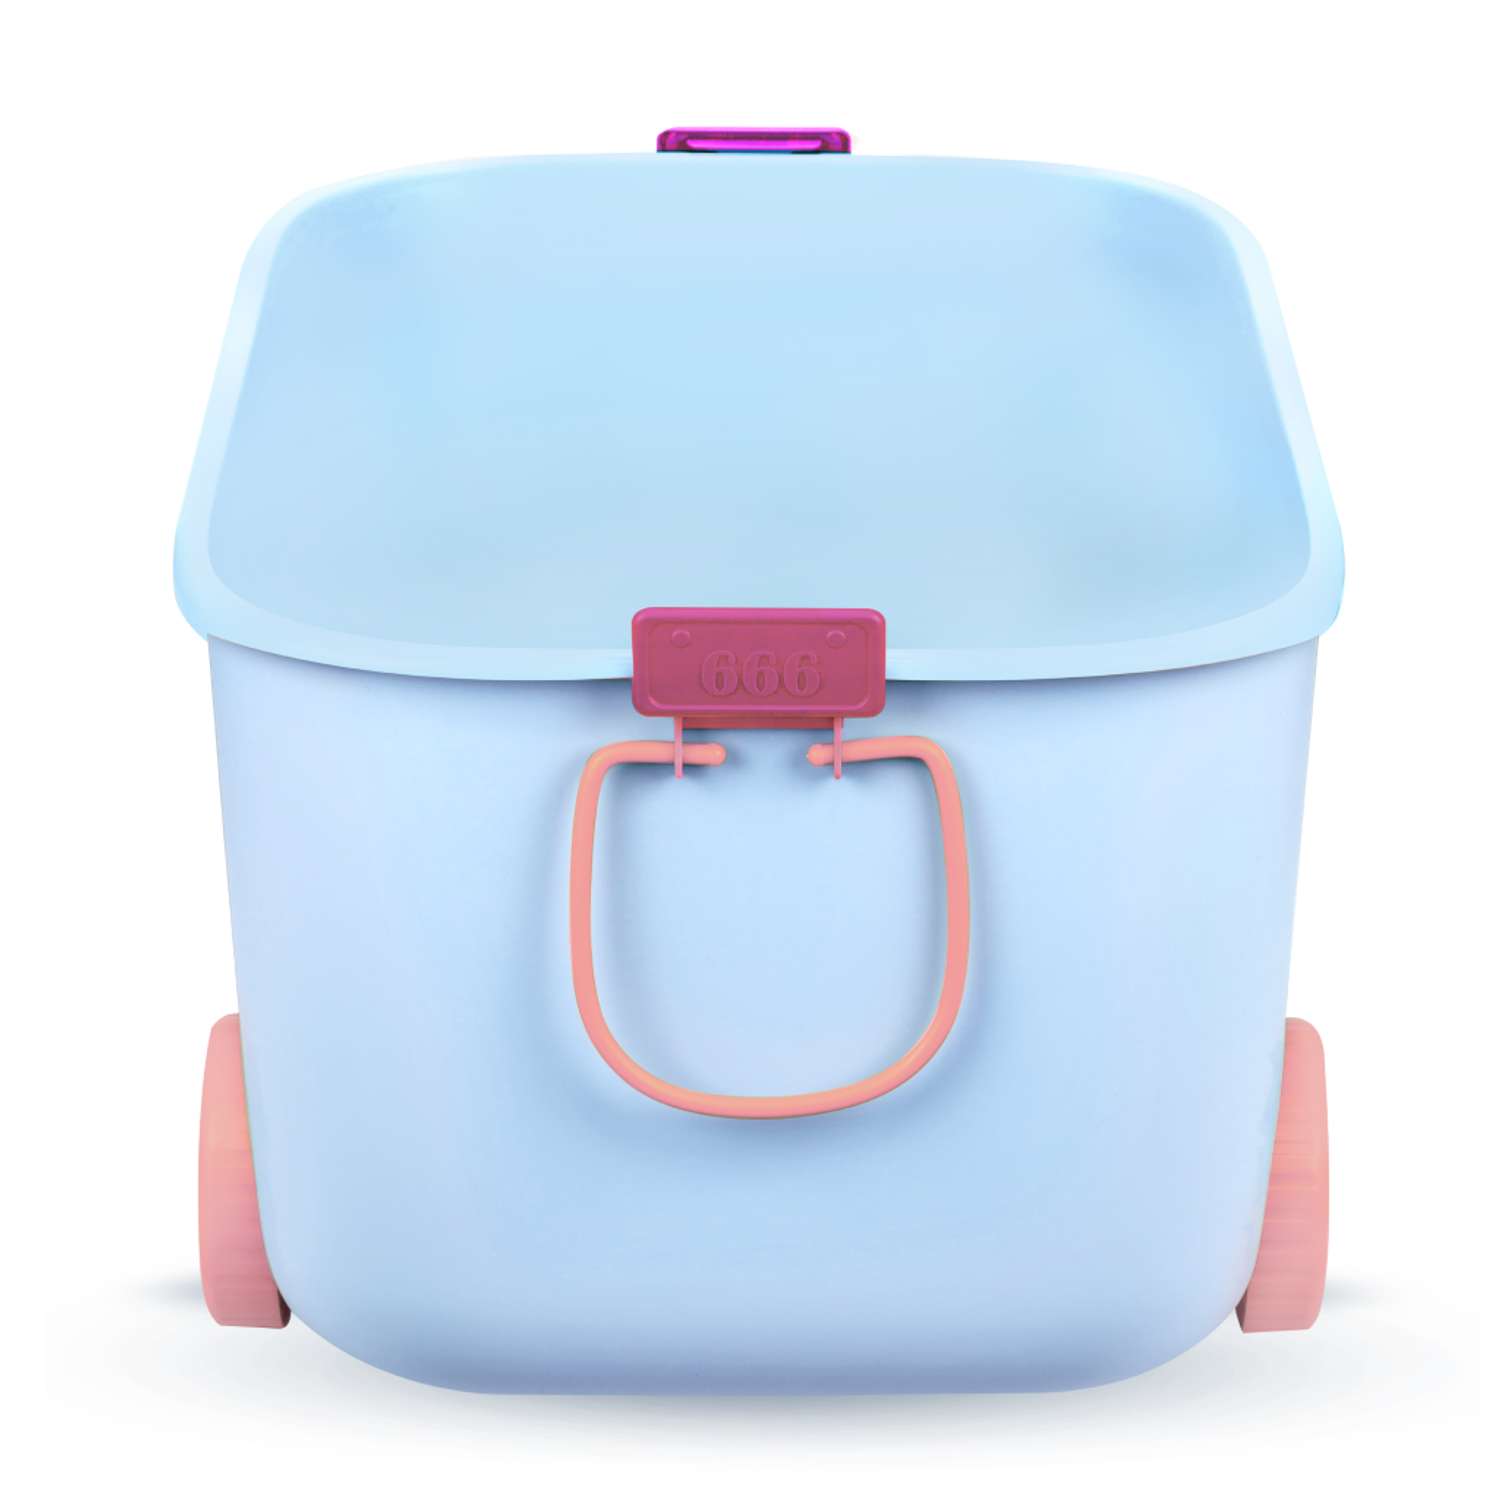 Ящик для хранения игрушек Solmax контейнер на колесиках 54х41.5х38 см голубой - фото 8